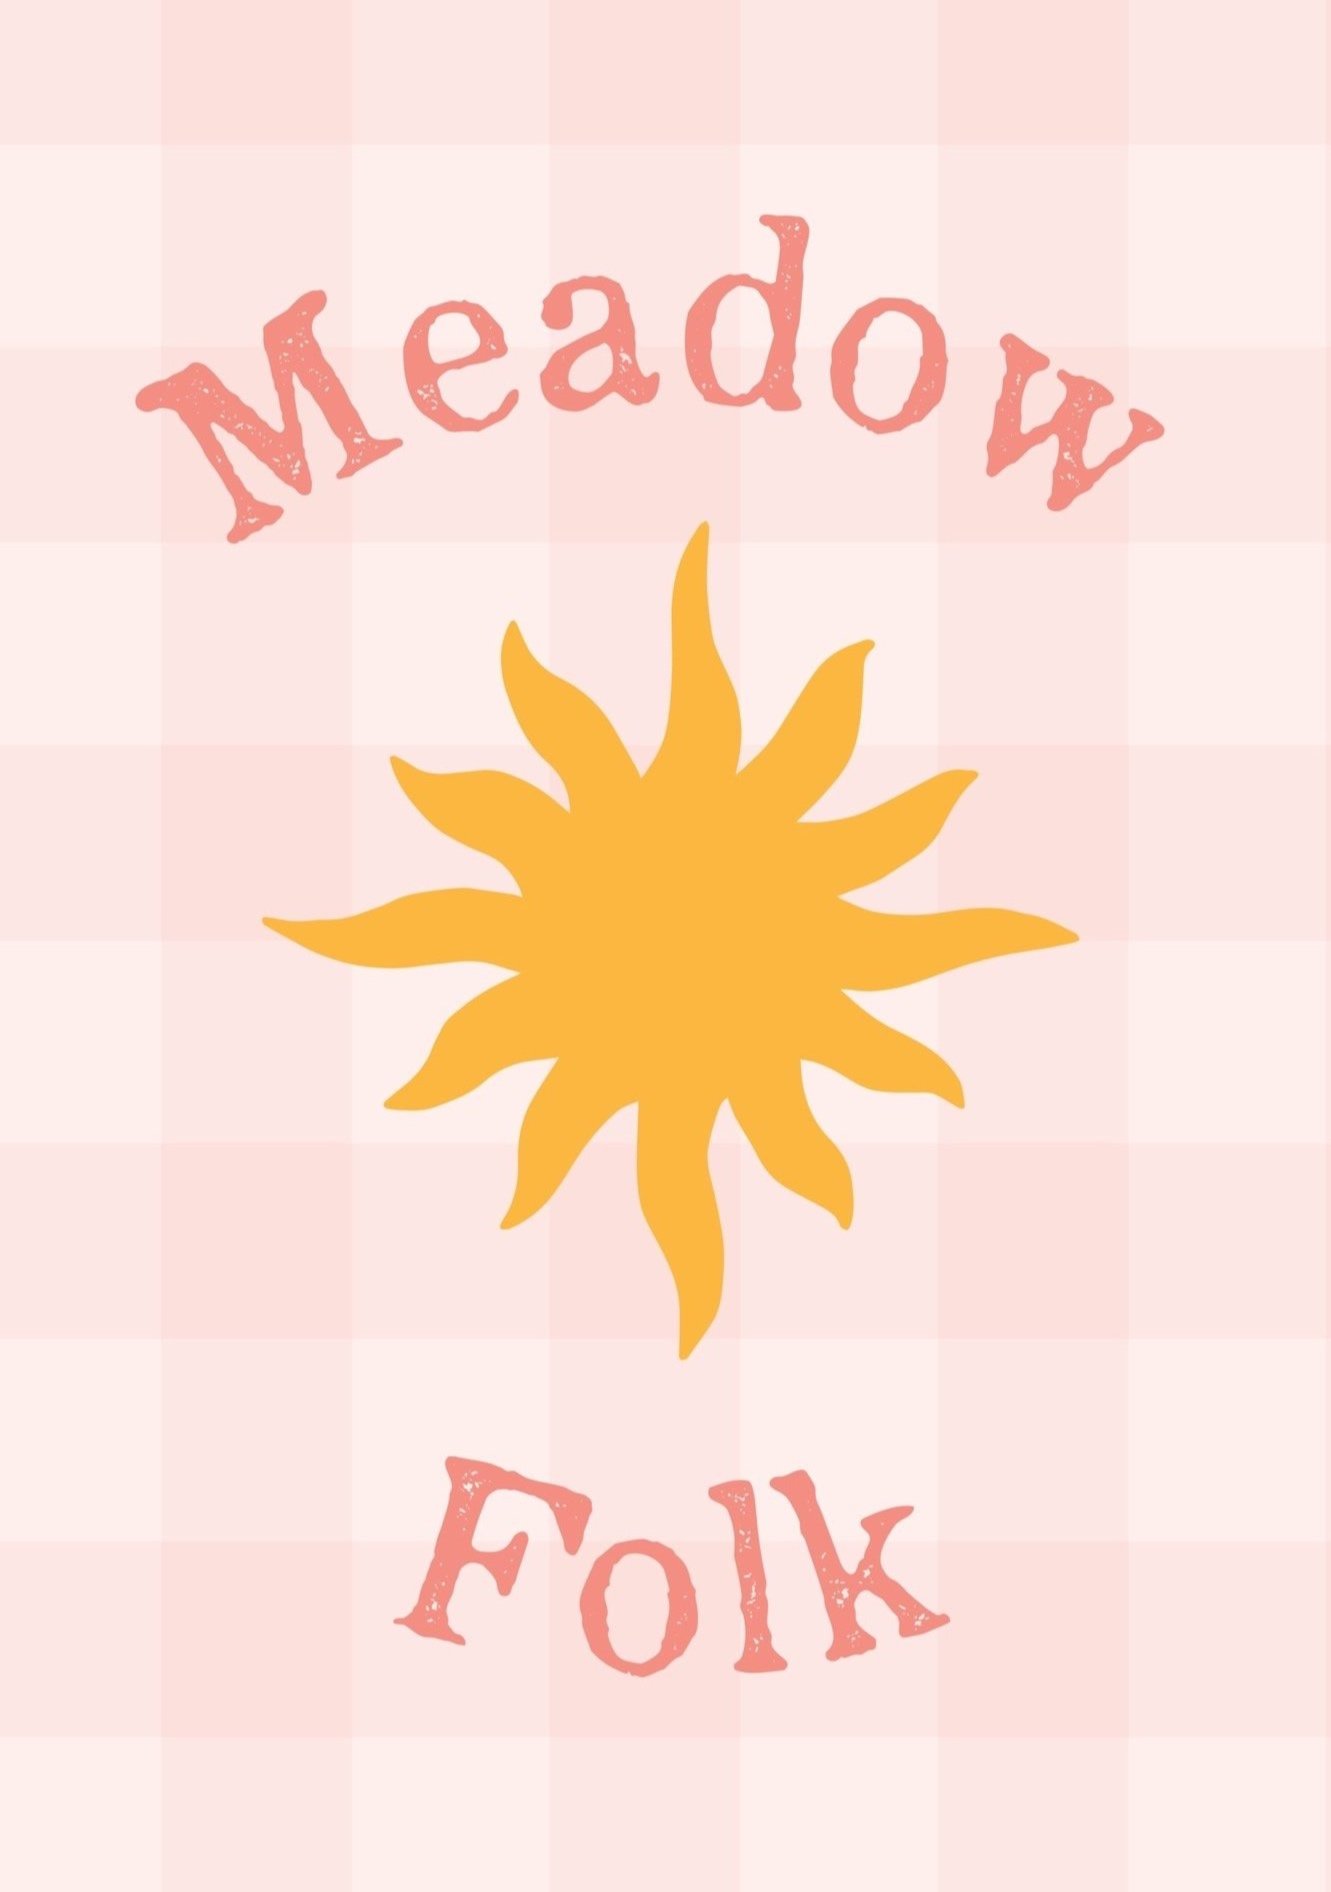 MeadowFolk